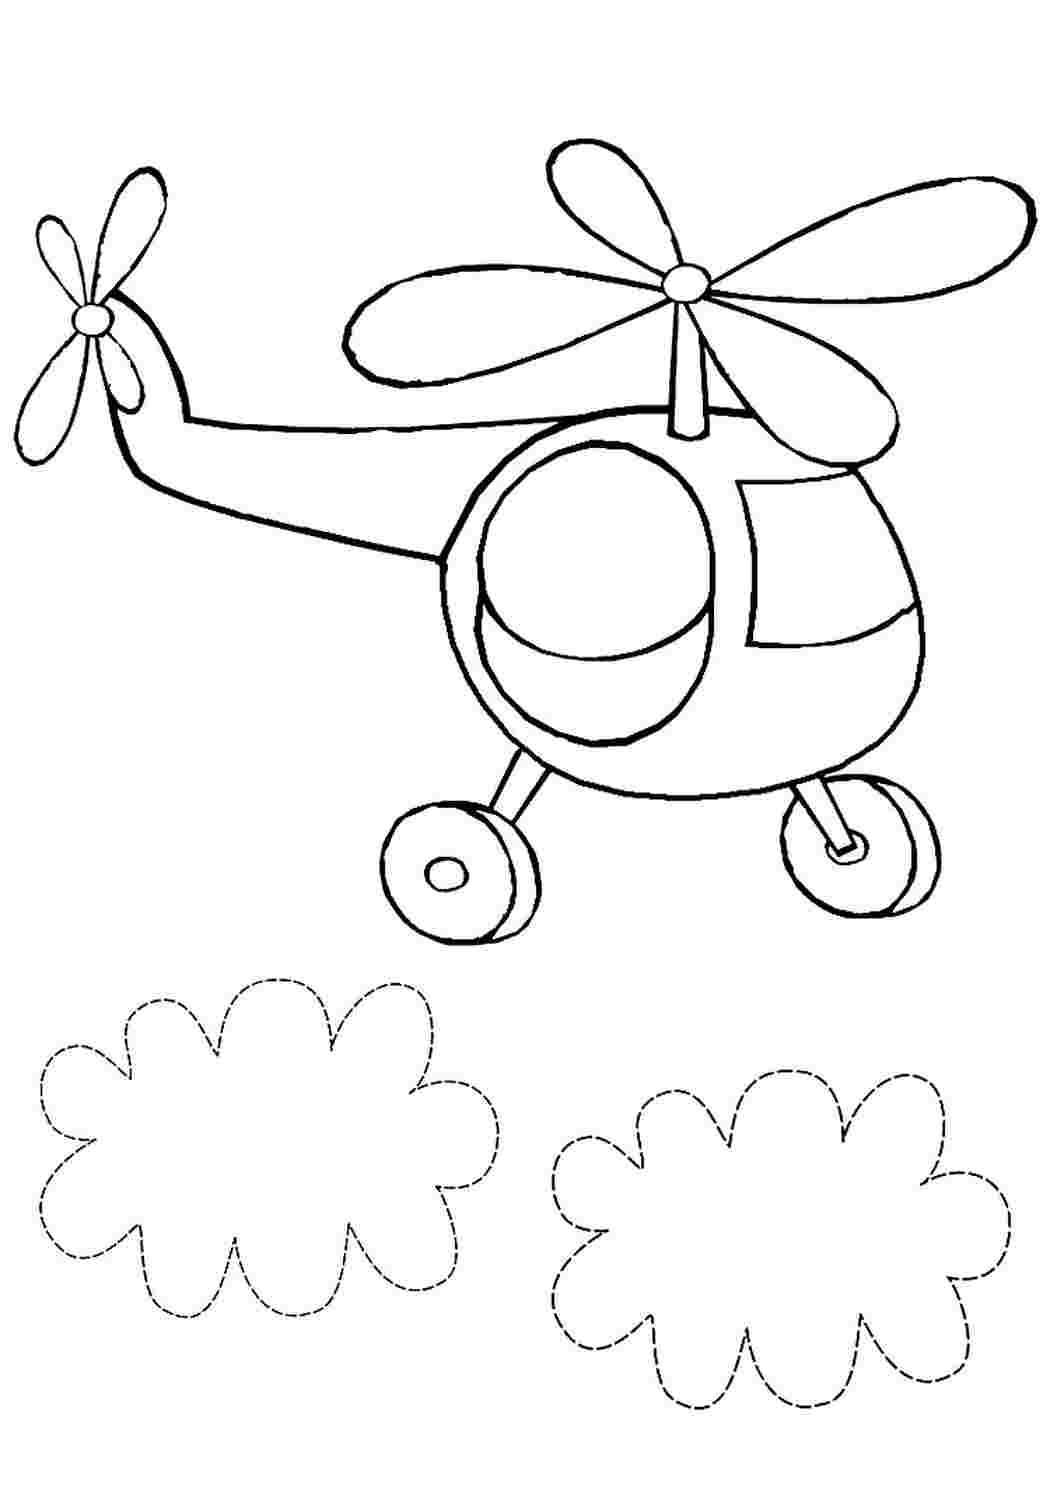 Вертолет раскраска для малышей